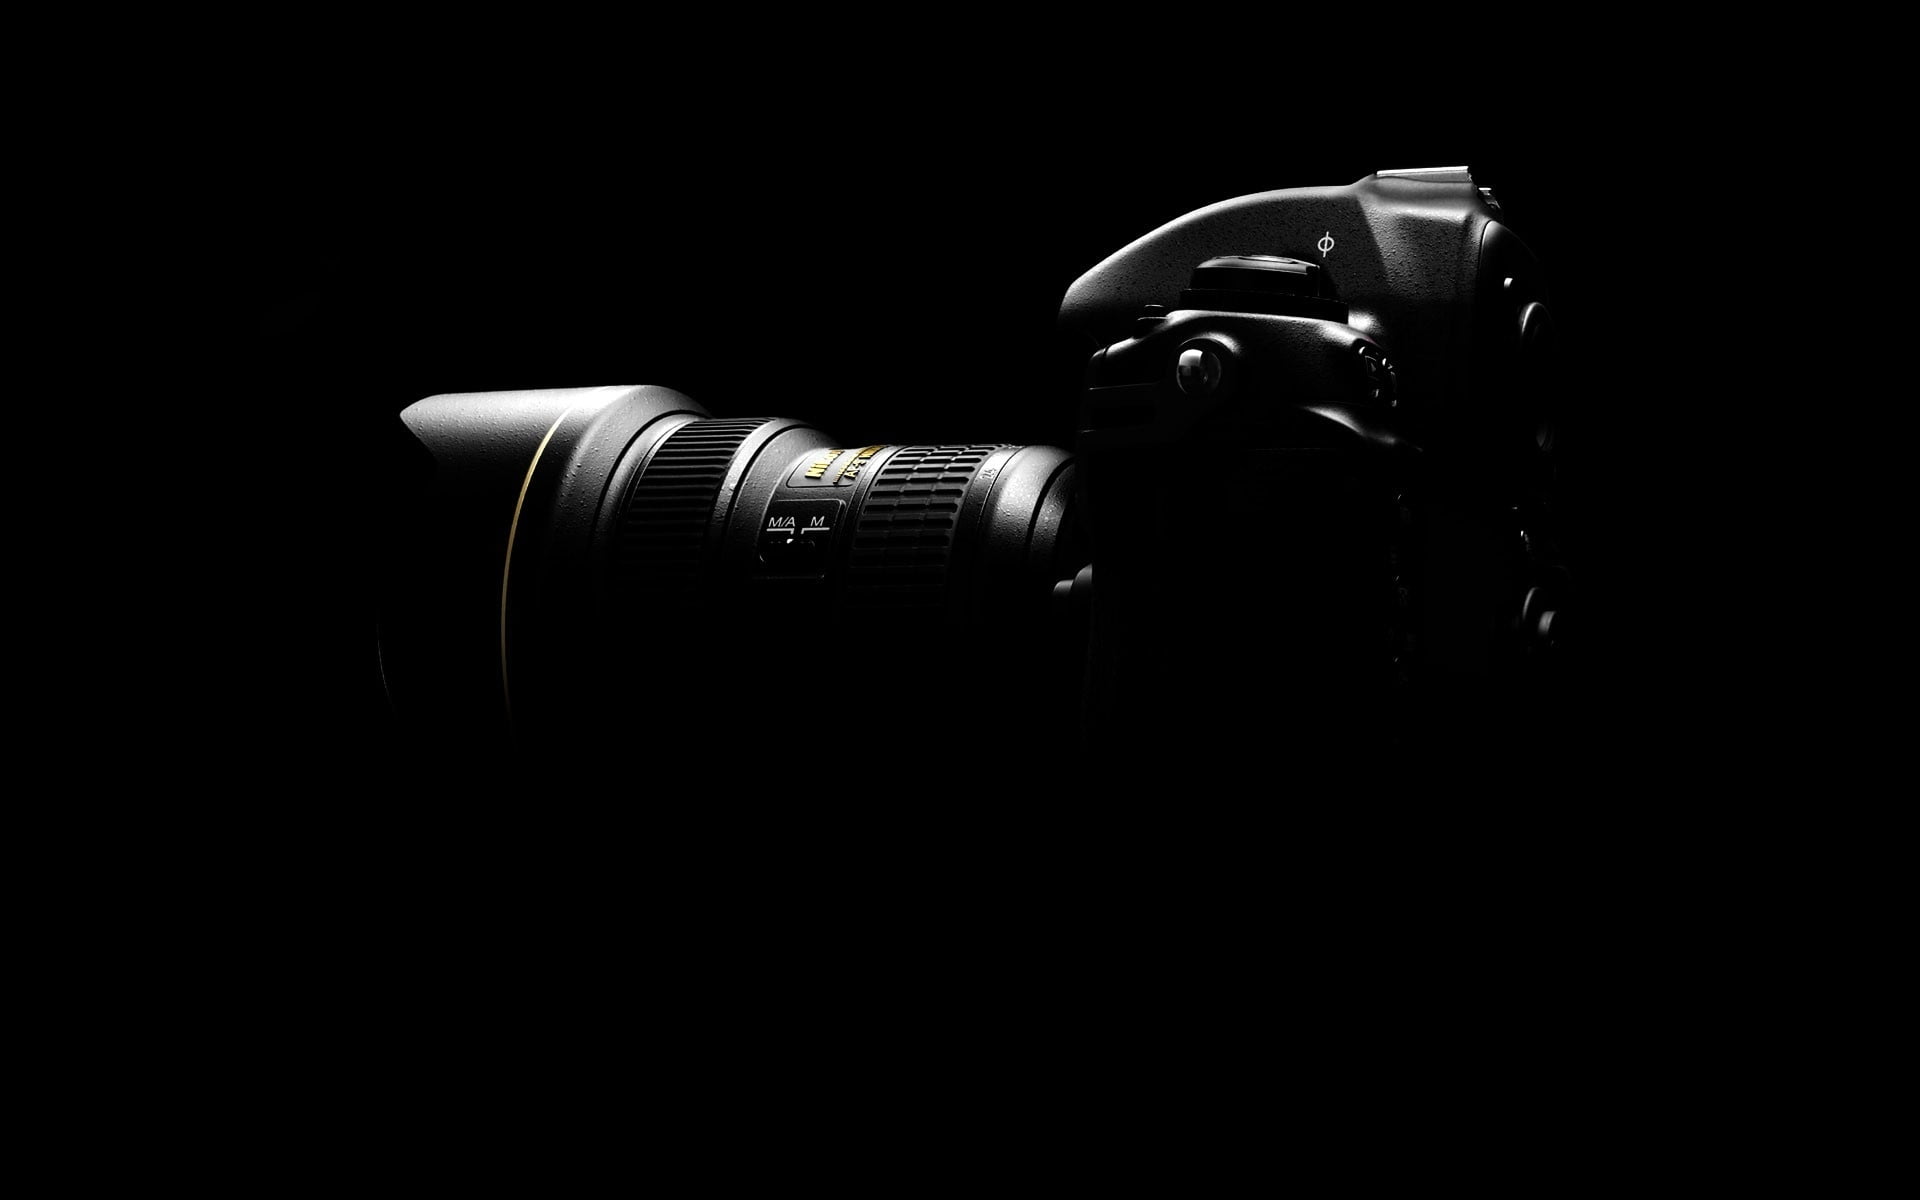 Khám phá những bức ảnh nổi bật máy ảnh DSLR đen nền tối với các chi tiết tuyệt đẹp được làm nổi bật trên nền đen thu hút như một chân dung hoàn hảo. Đây là bộ sưu tập khu vực tuyệt đẹp dành cho những fan của hình ảnh chuyên nghiệp.